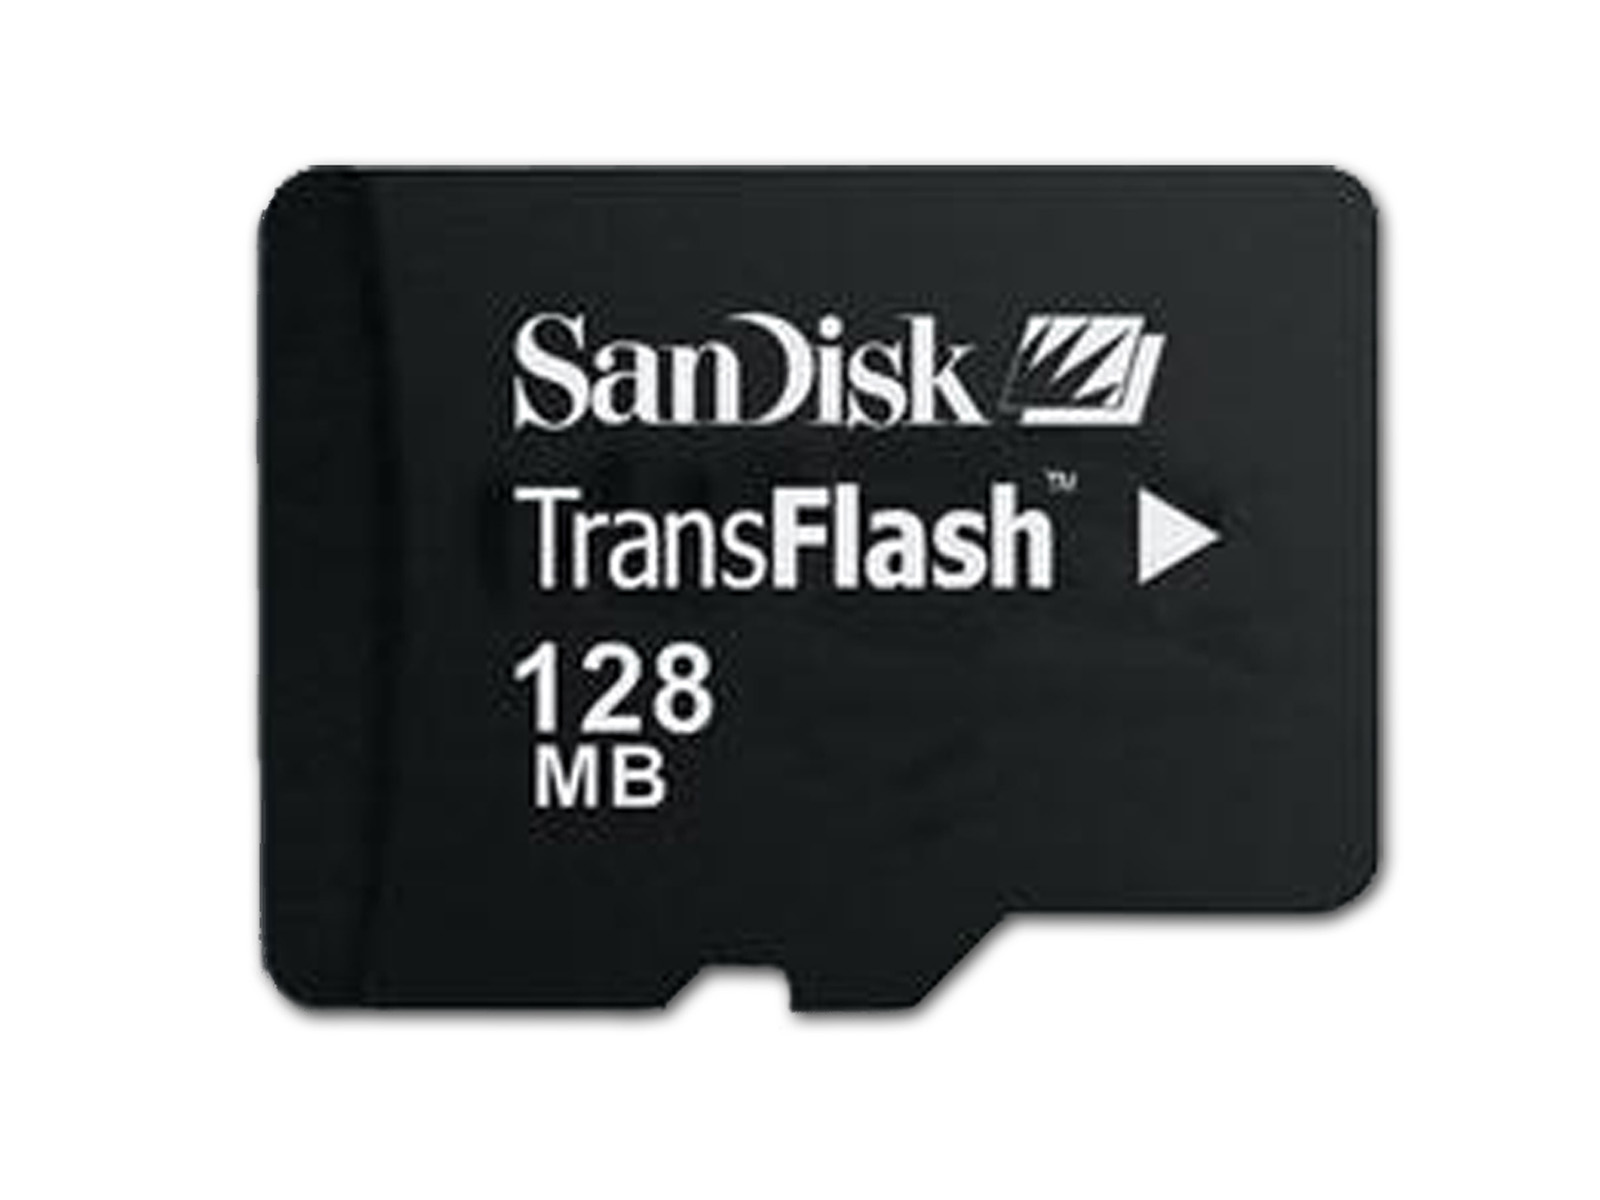 Sandisk 128MB TF